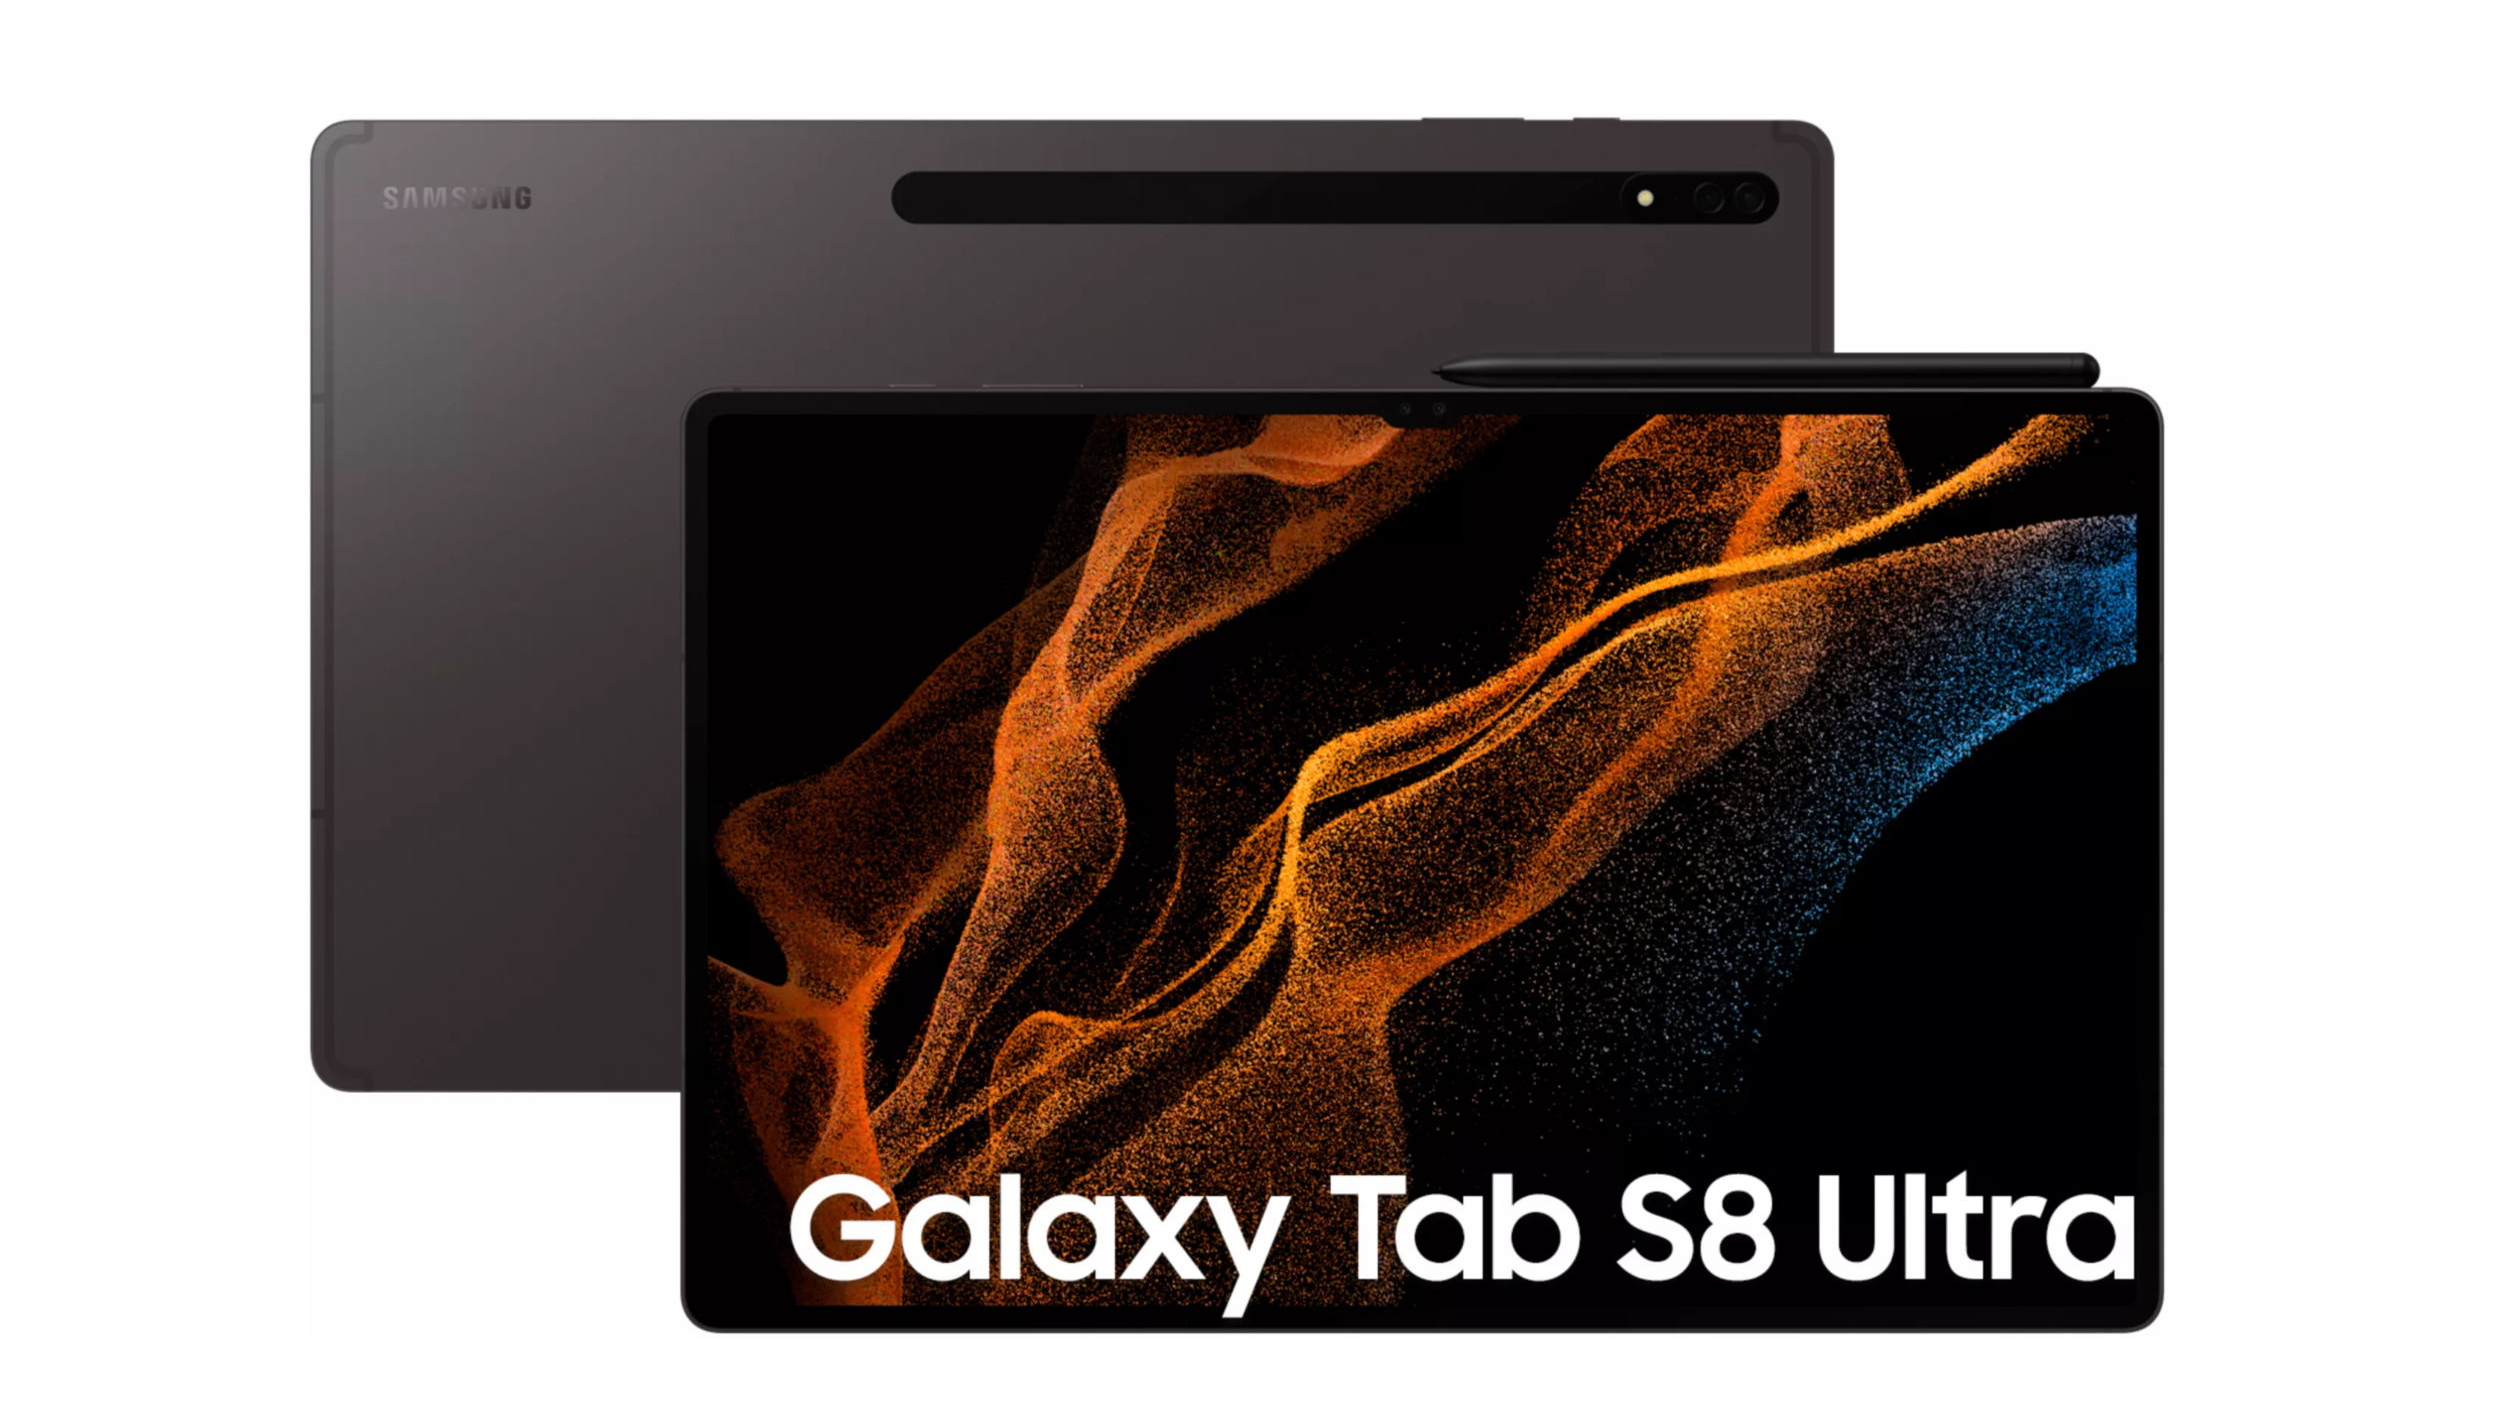 Samsung Galaxy Tab A : l'excellente tablette à un prix jamais vu